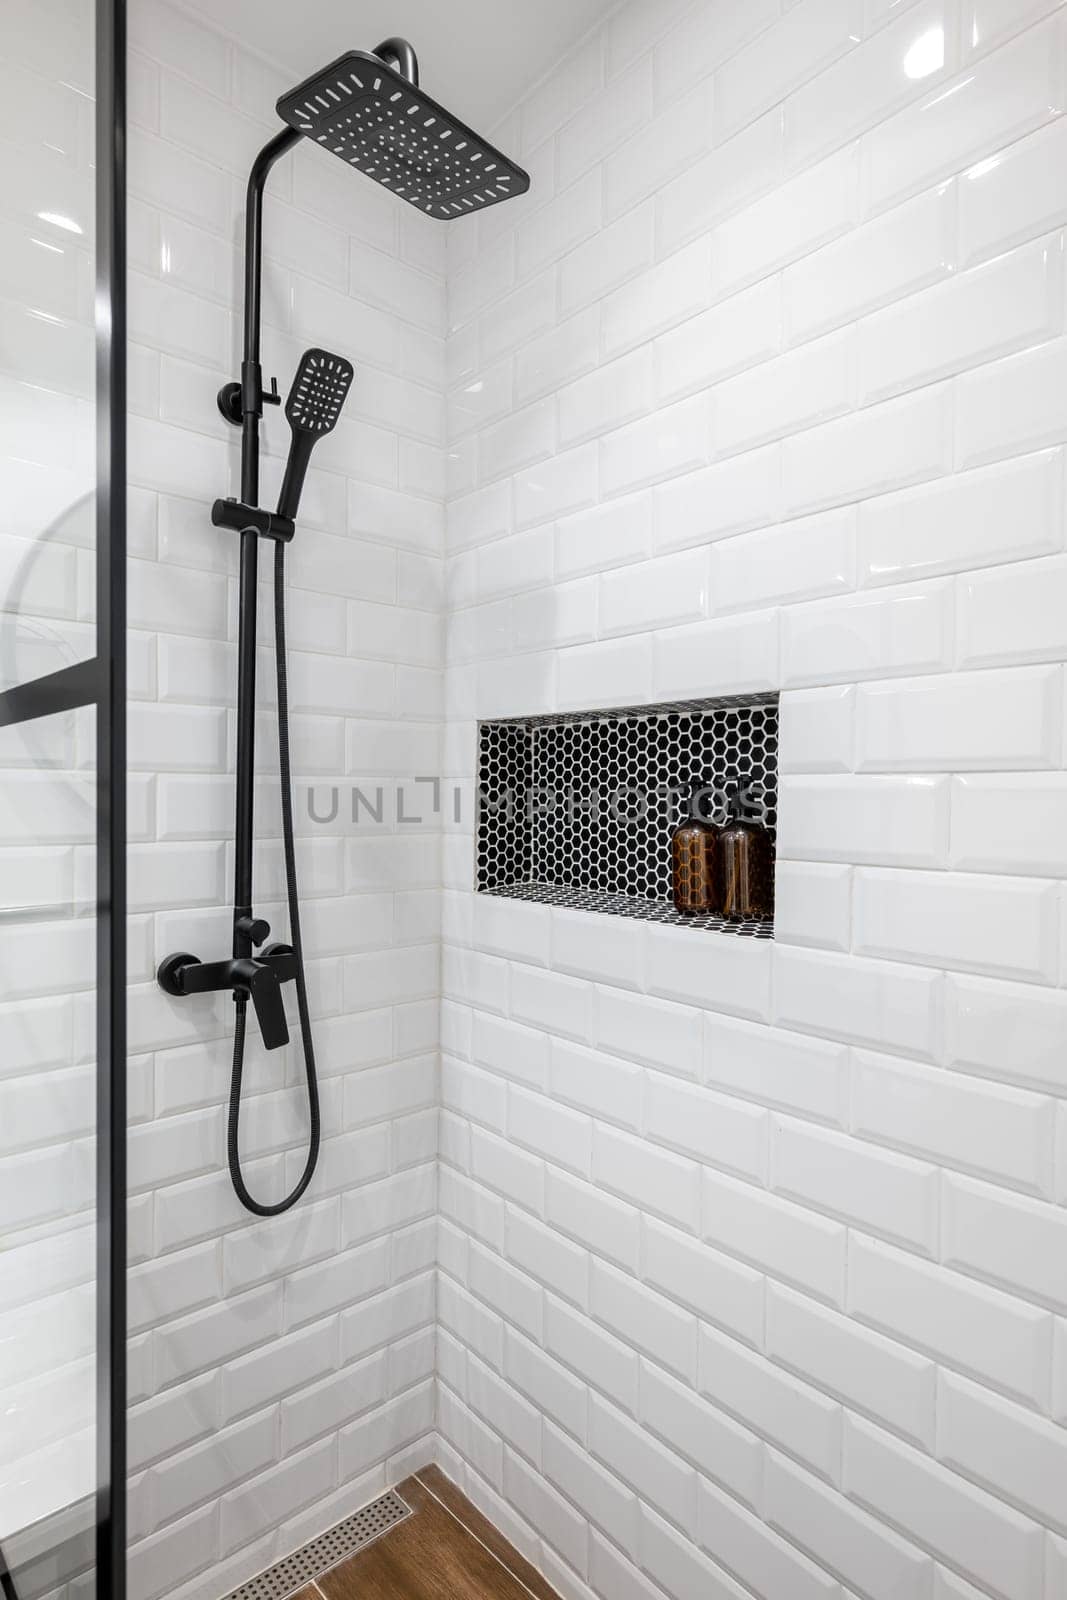 New black shower head on holder in white tiled bathroom in modern apartment. by apavlin